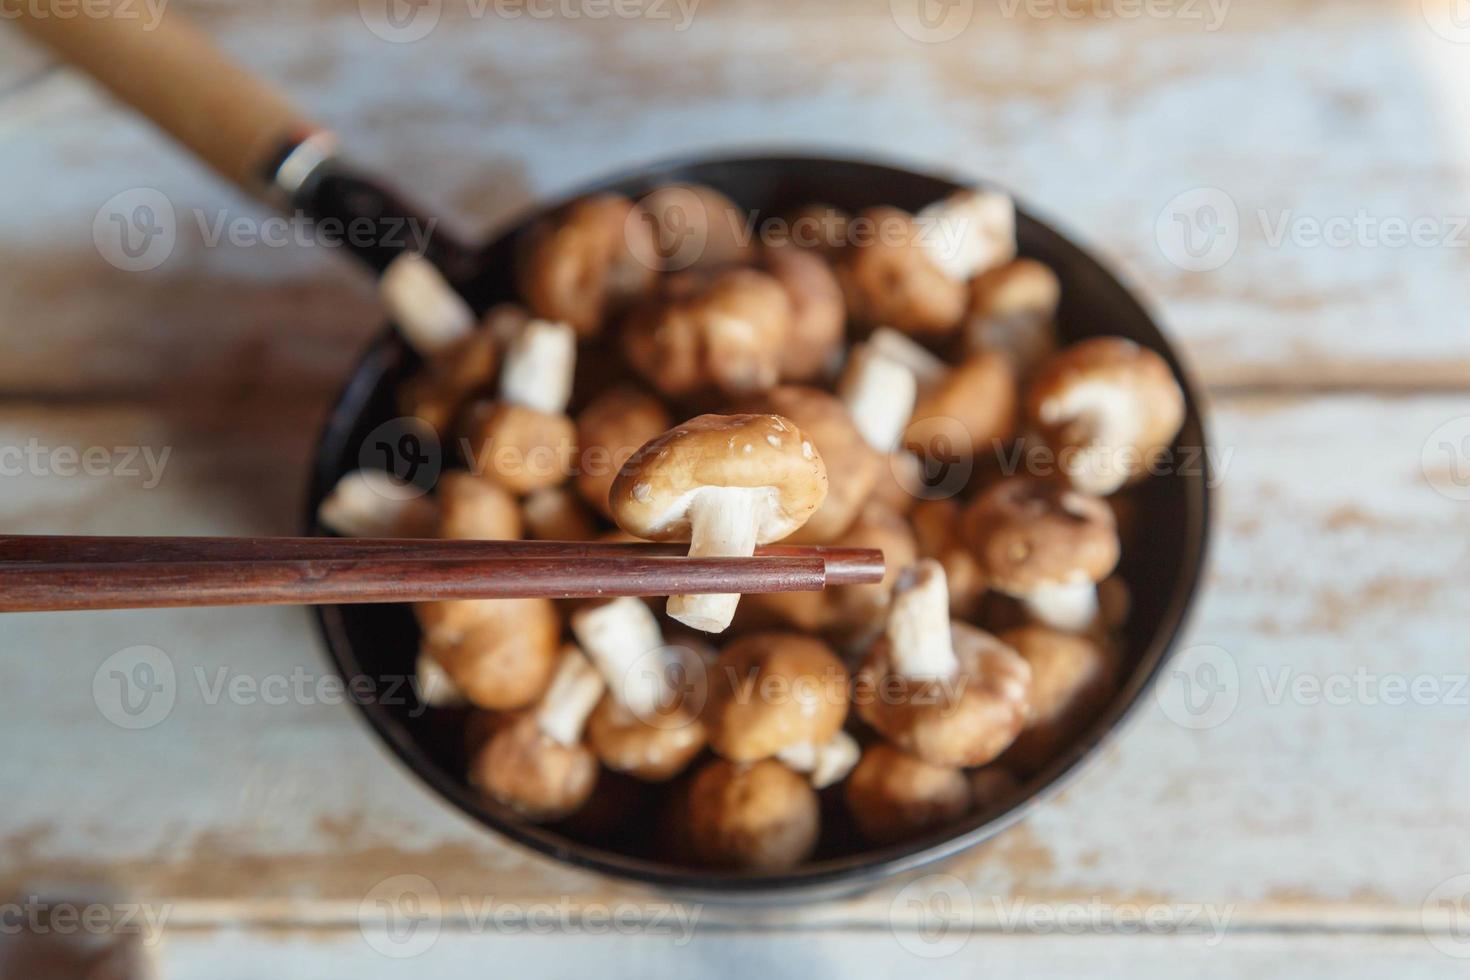 champignons shiitake frais dans une casserole pour la cuisson photo